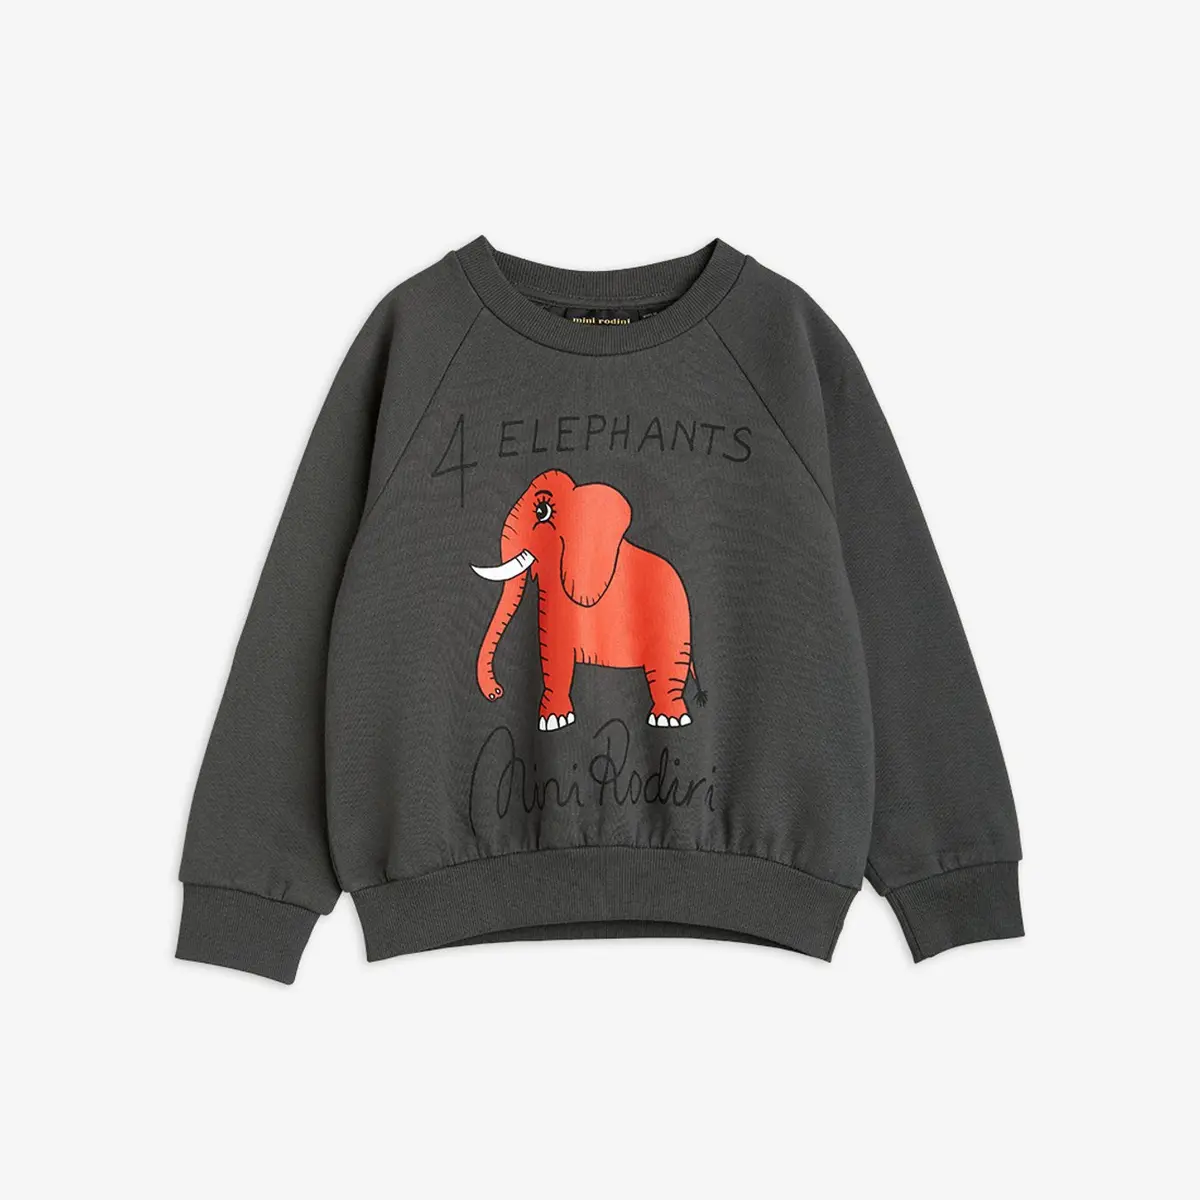 4 Elephants Sweatshirt-image-0